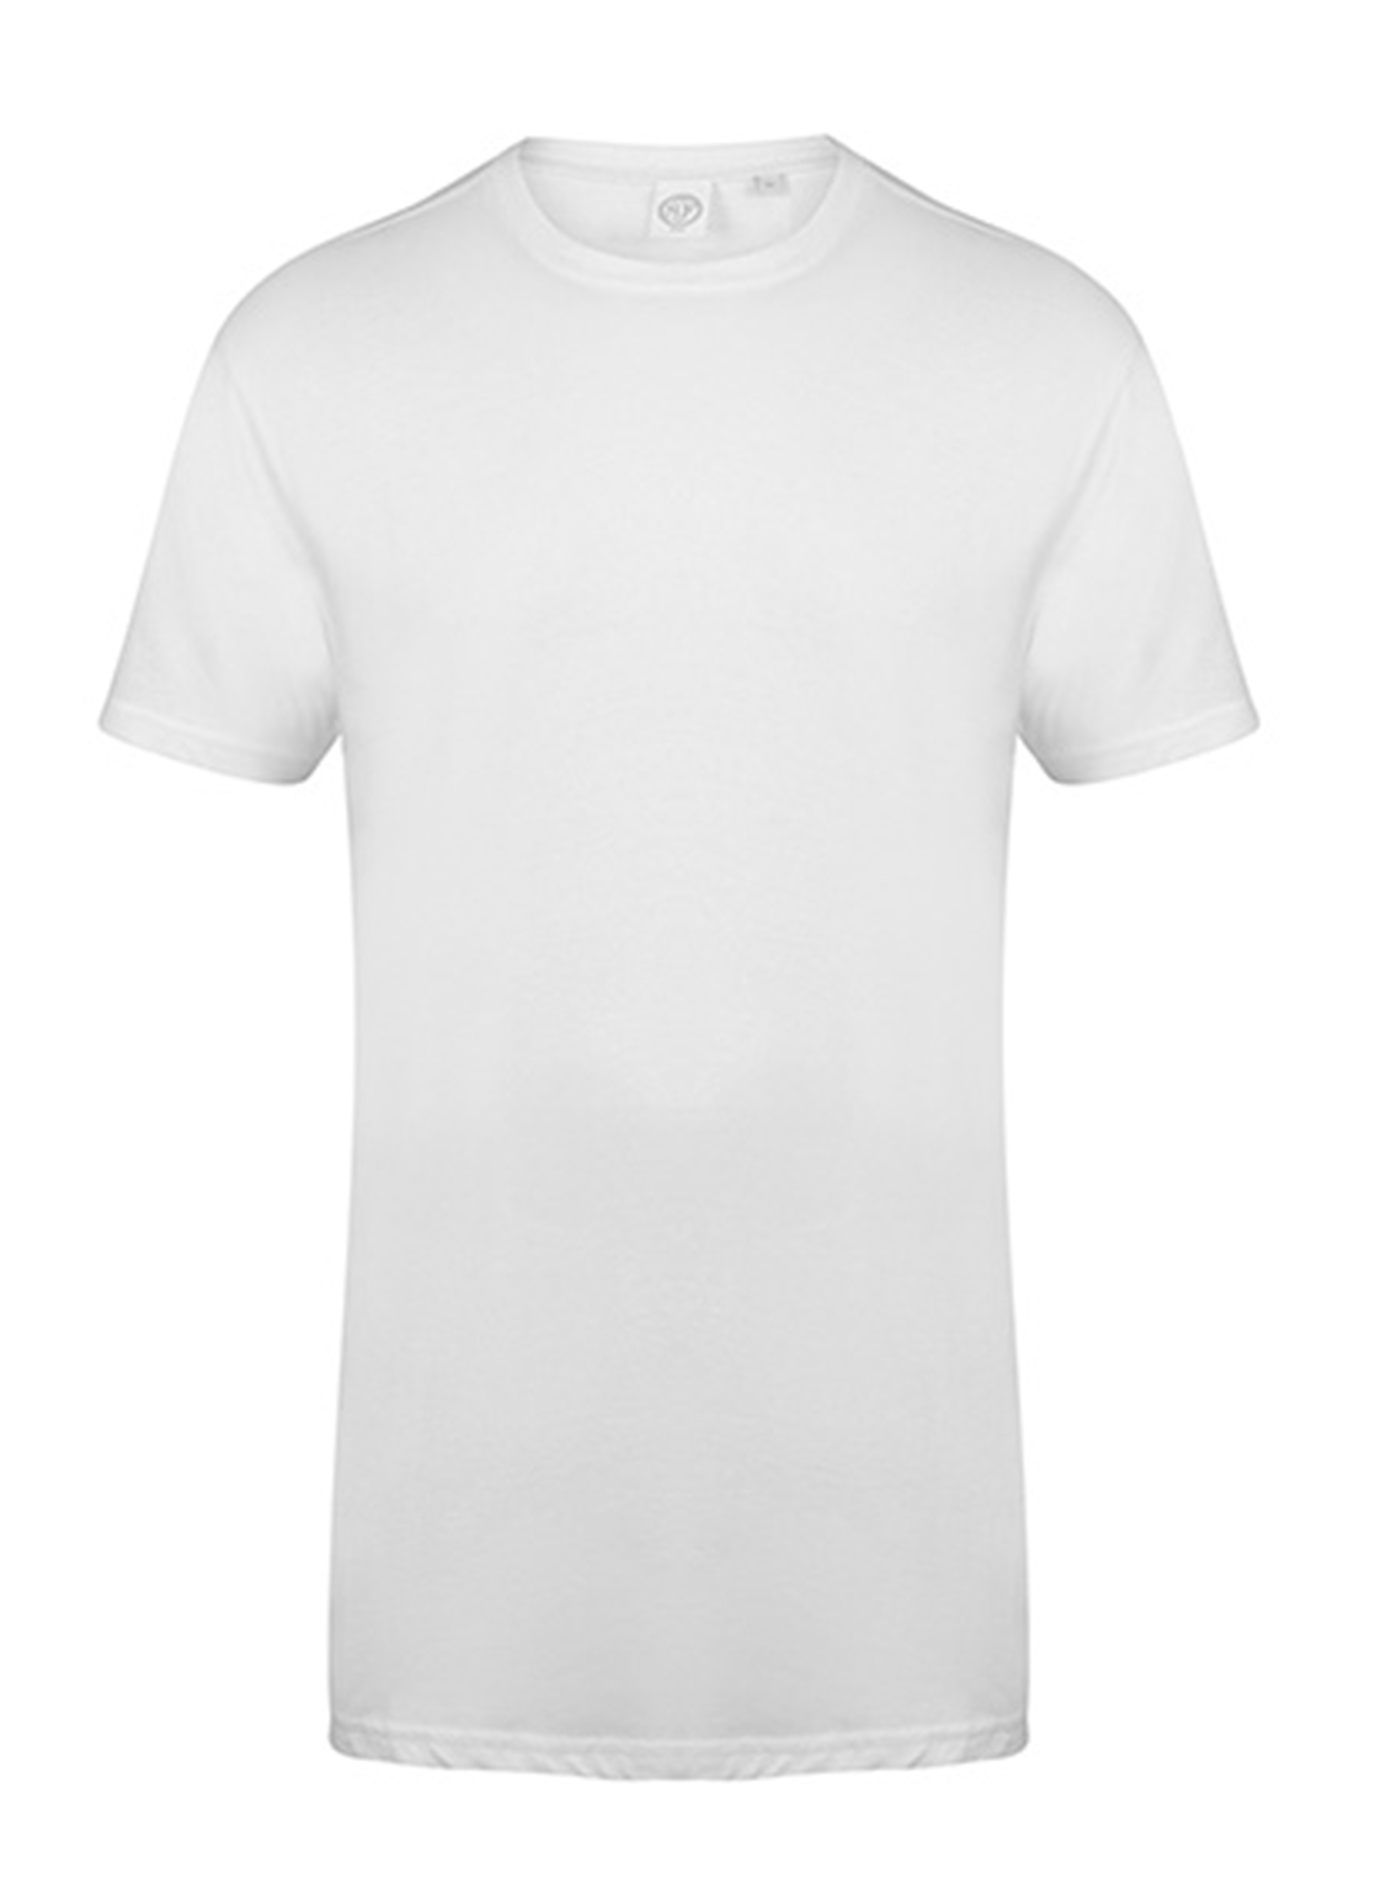 Pánské tričko s prodlouženým zadním dílem Skinnifit Longline T - Bílá XL